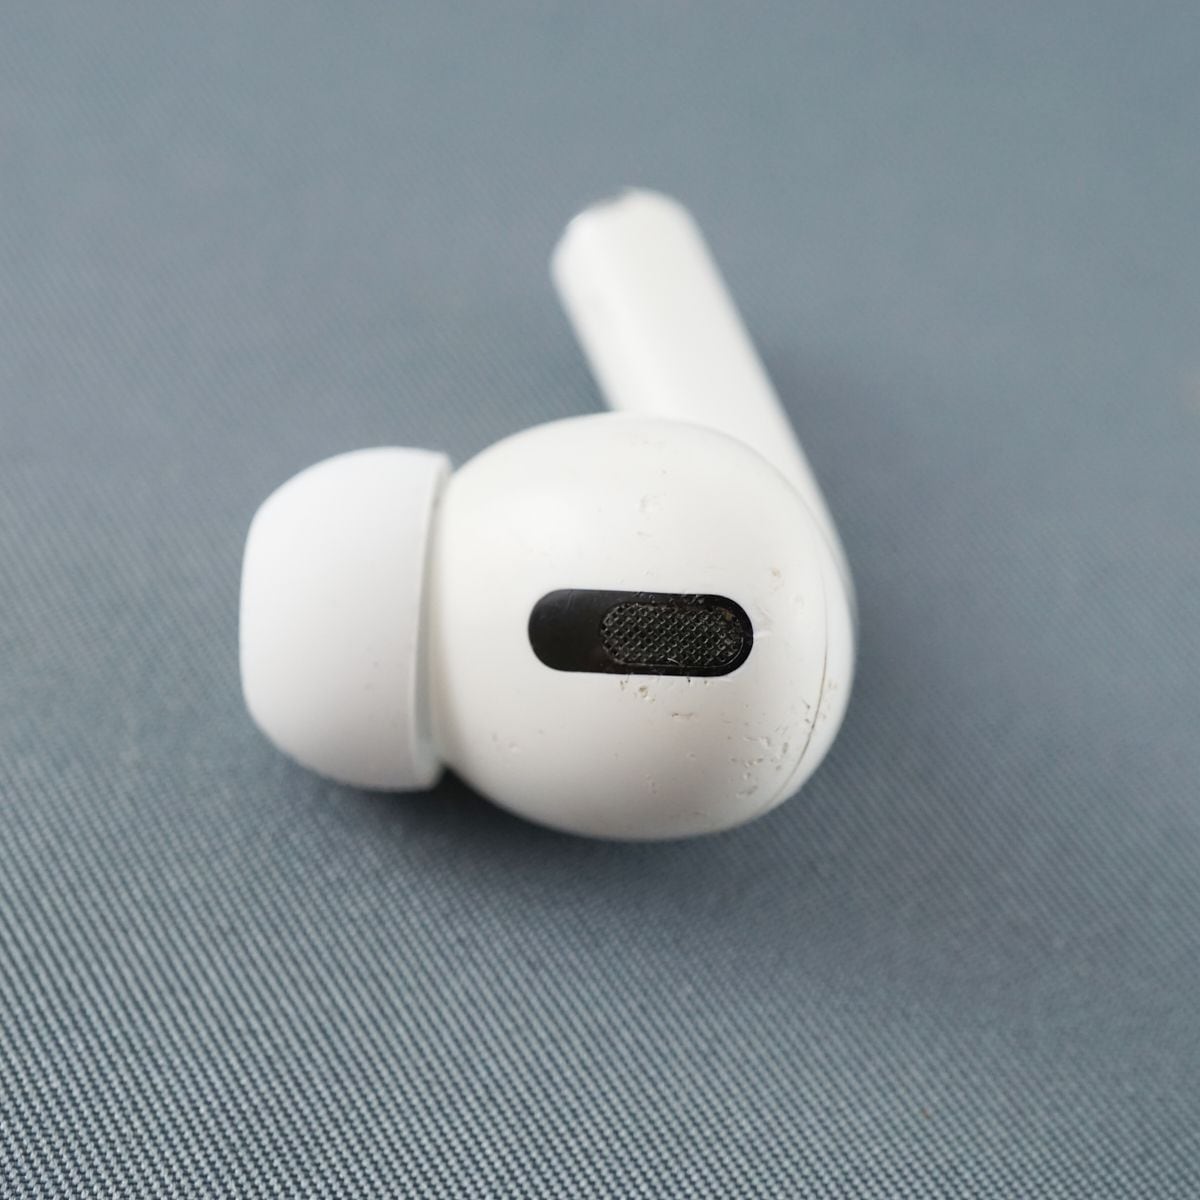 Apple純正ワイヤレスイヤホンAirPods第2世代 左耳用 美品